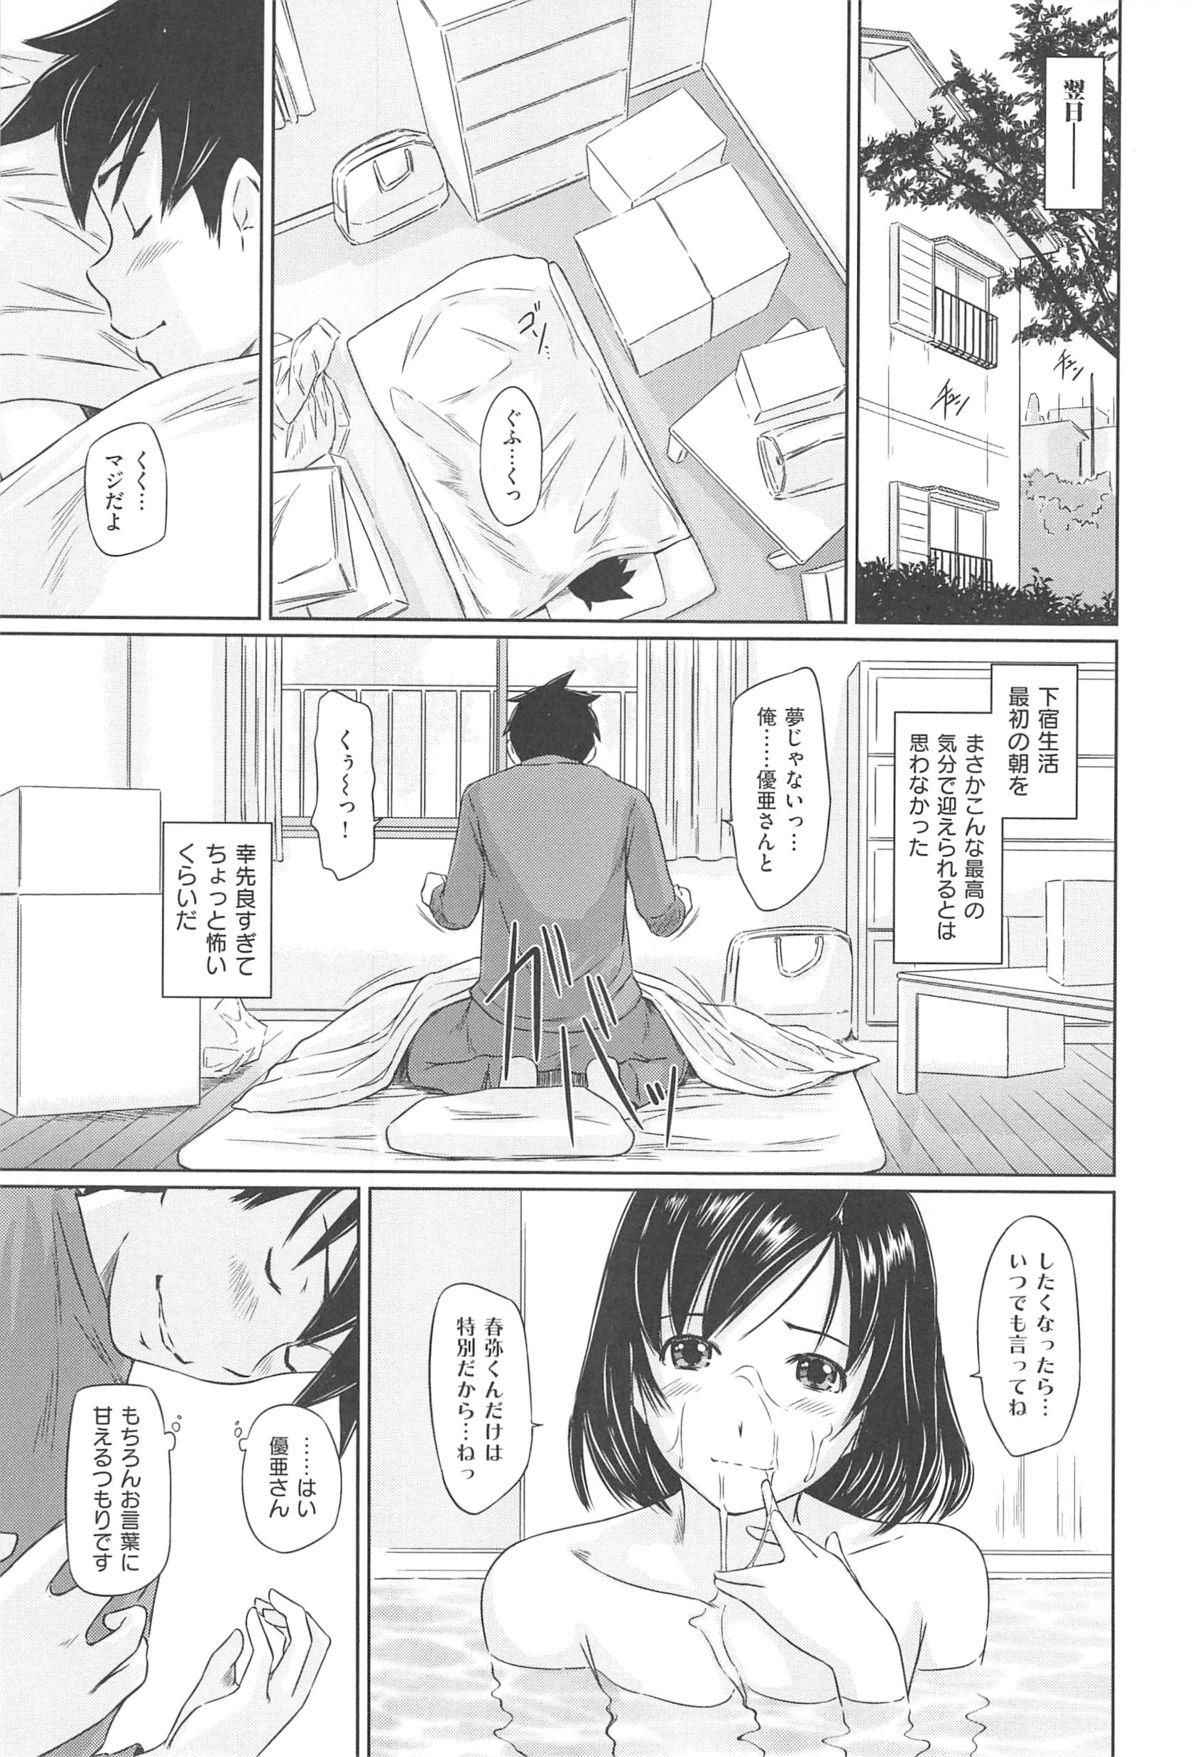 Tokoharu-sou e Youkoso Page 27 Of 236 hentai haven, Tokoharu-sou e Youkoso ...